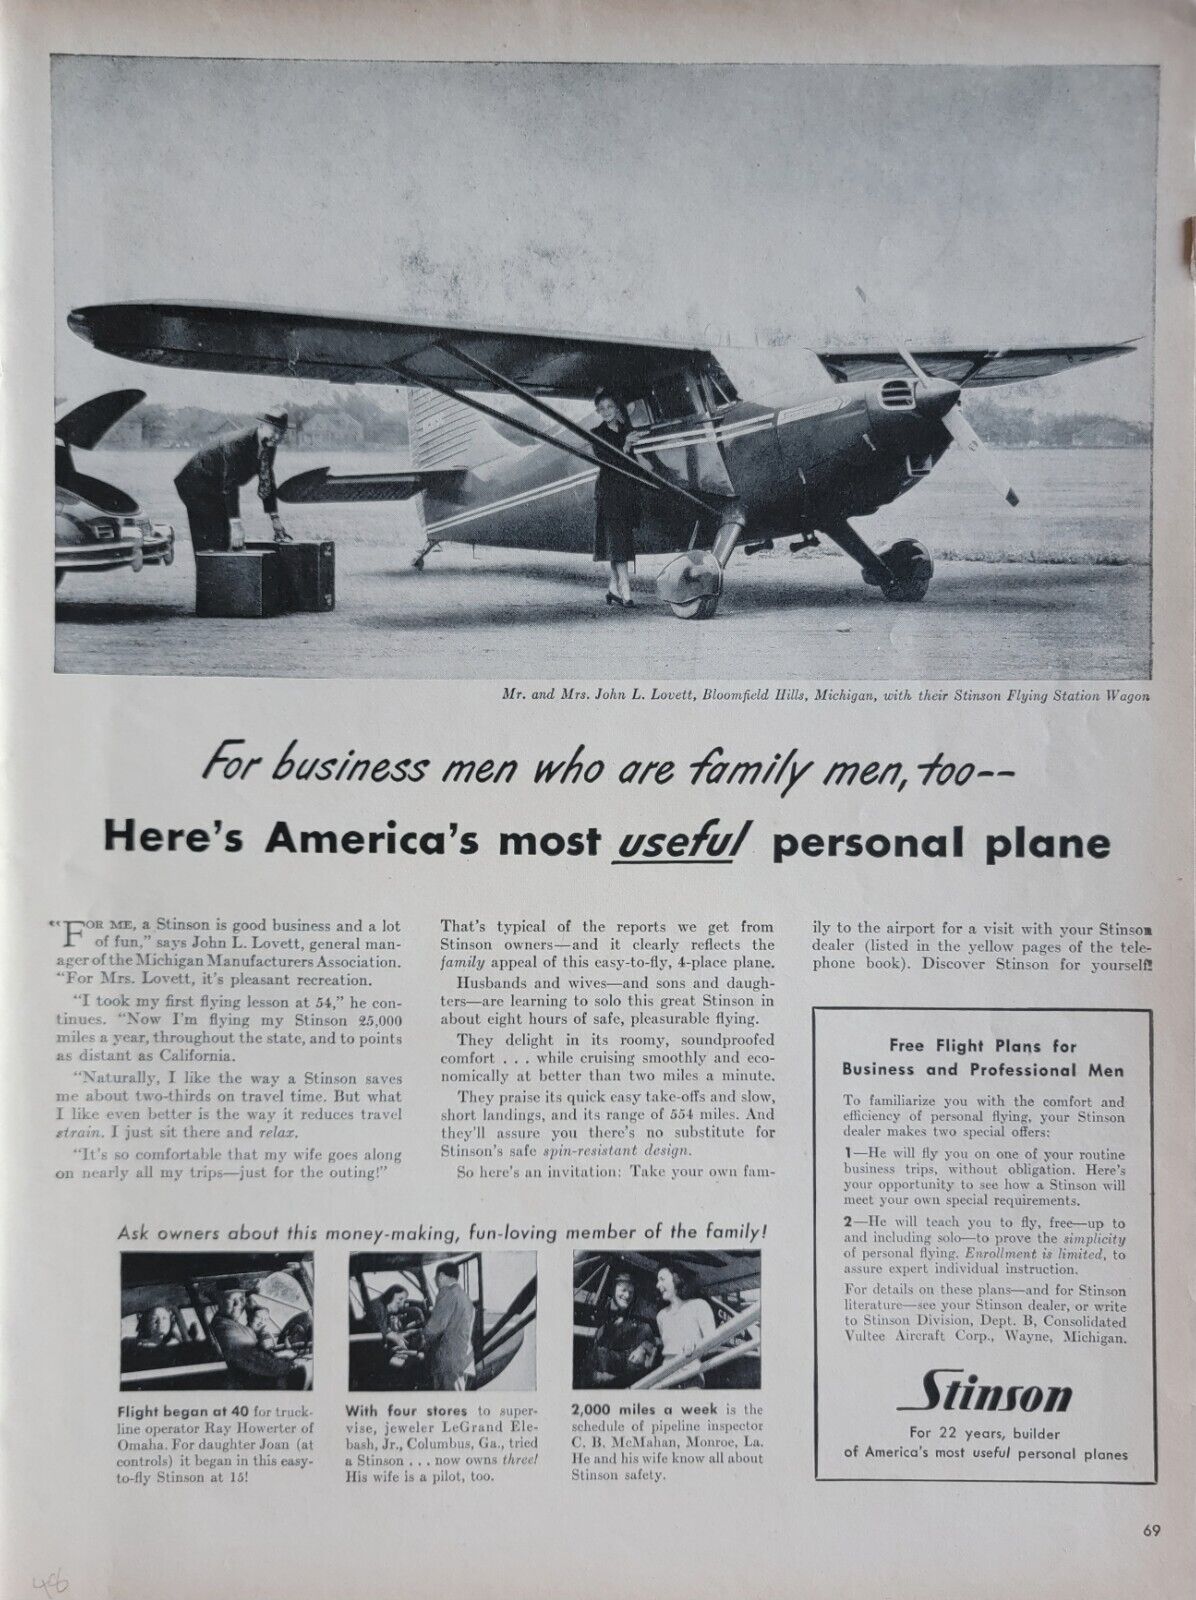 Stinson Flying Station Wagon Vintage 1948 Aviation Ad